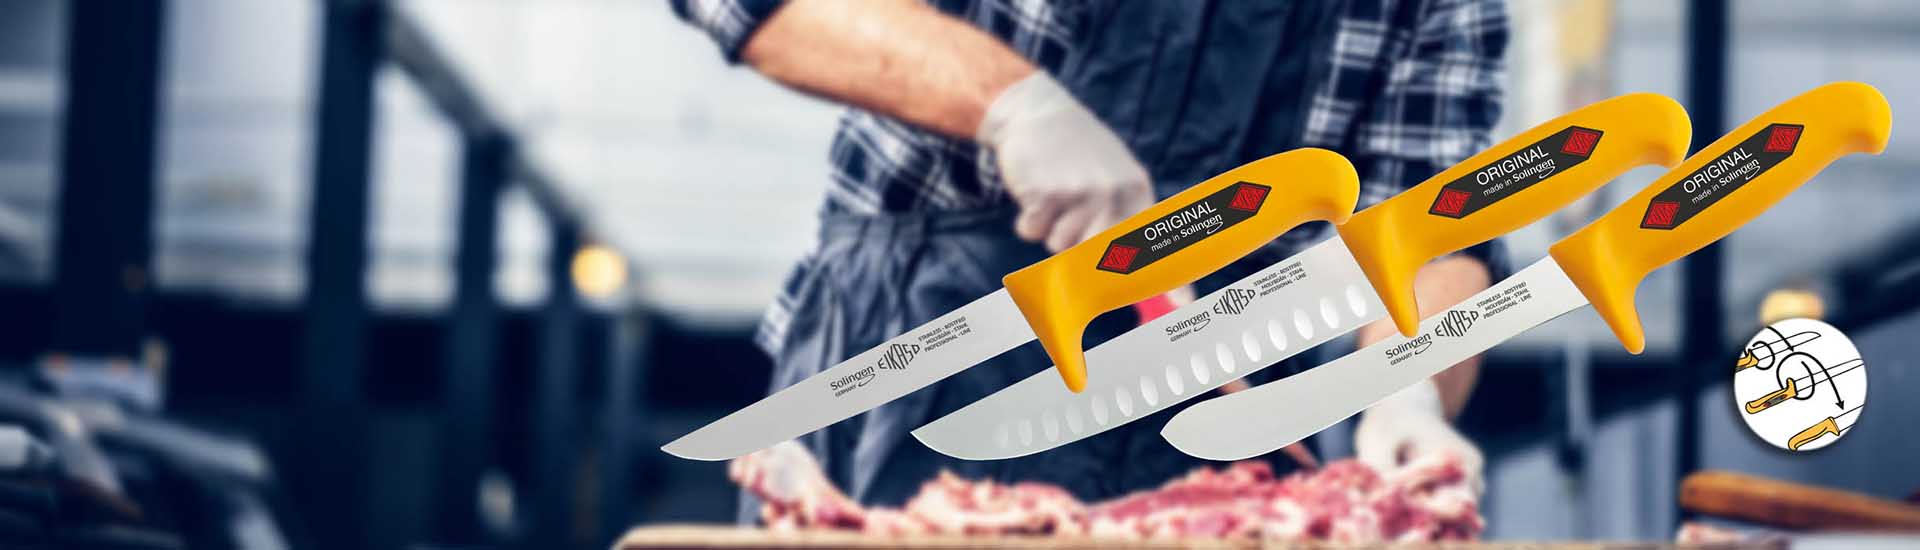 Eikaso Fleischmesser und Metzgermesser mit Sicherheitsgriff 'Profitect' - Qualität für professionelle Ansprüche